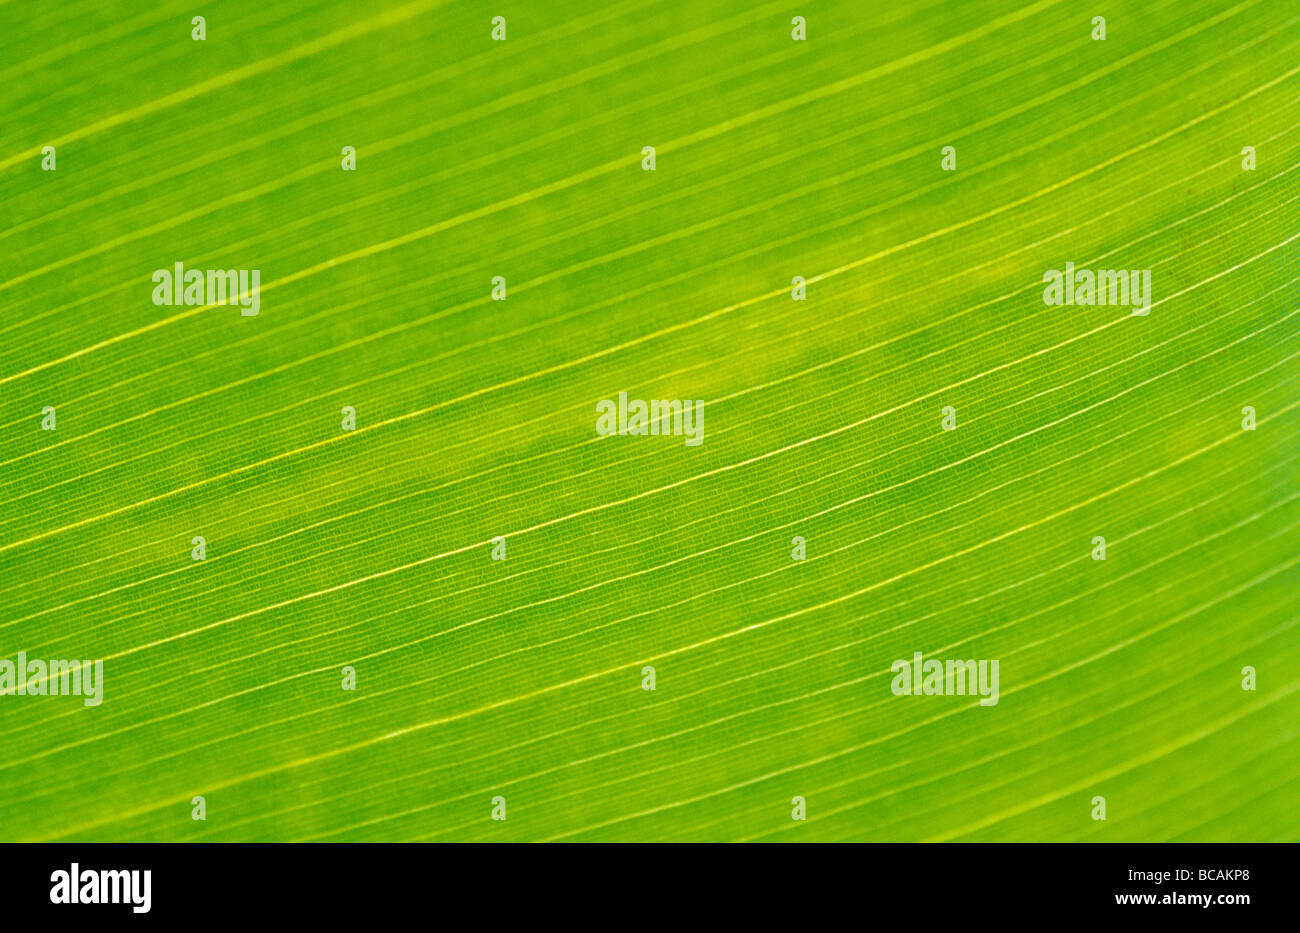 La trama verde brillante vene di una foglia di banano del genere Musa. Foto Stock